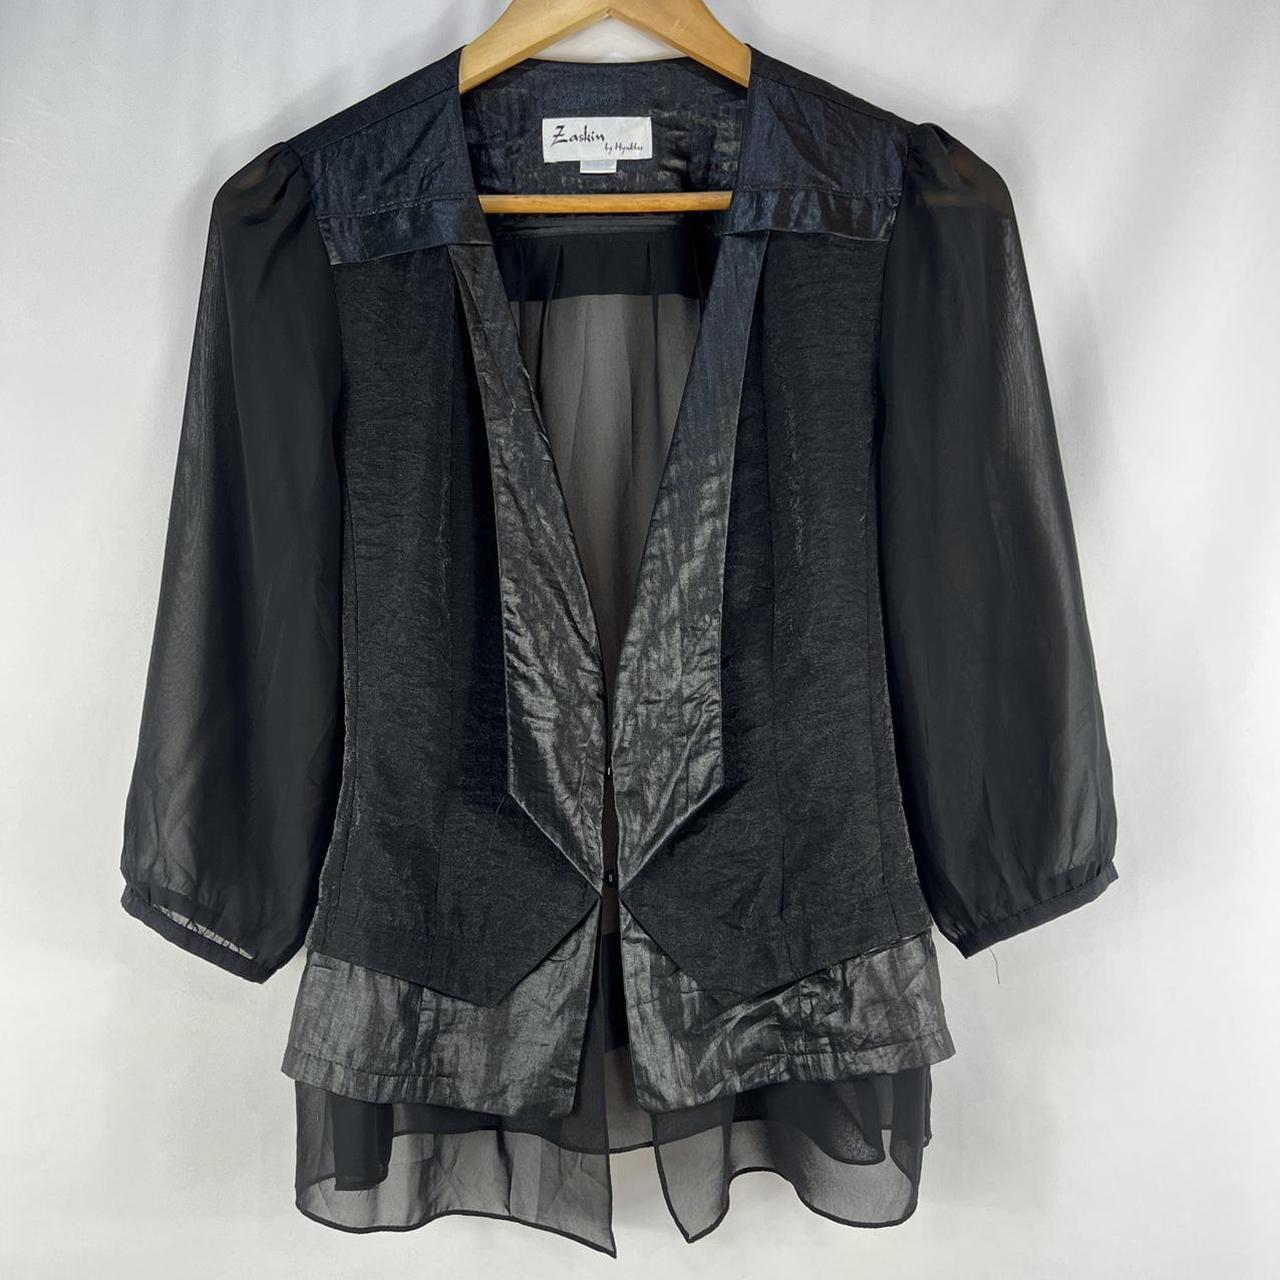 Vintage 90s Layered Black Blazer with Sheer Sleeves... - Depop